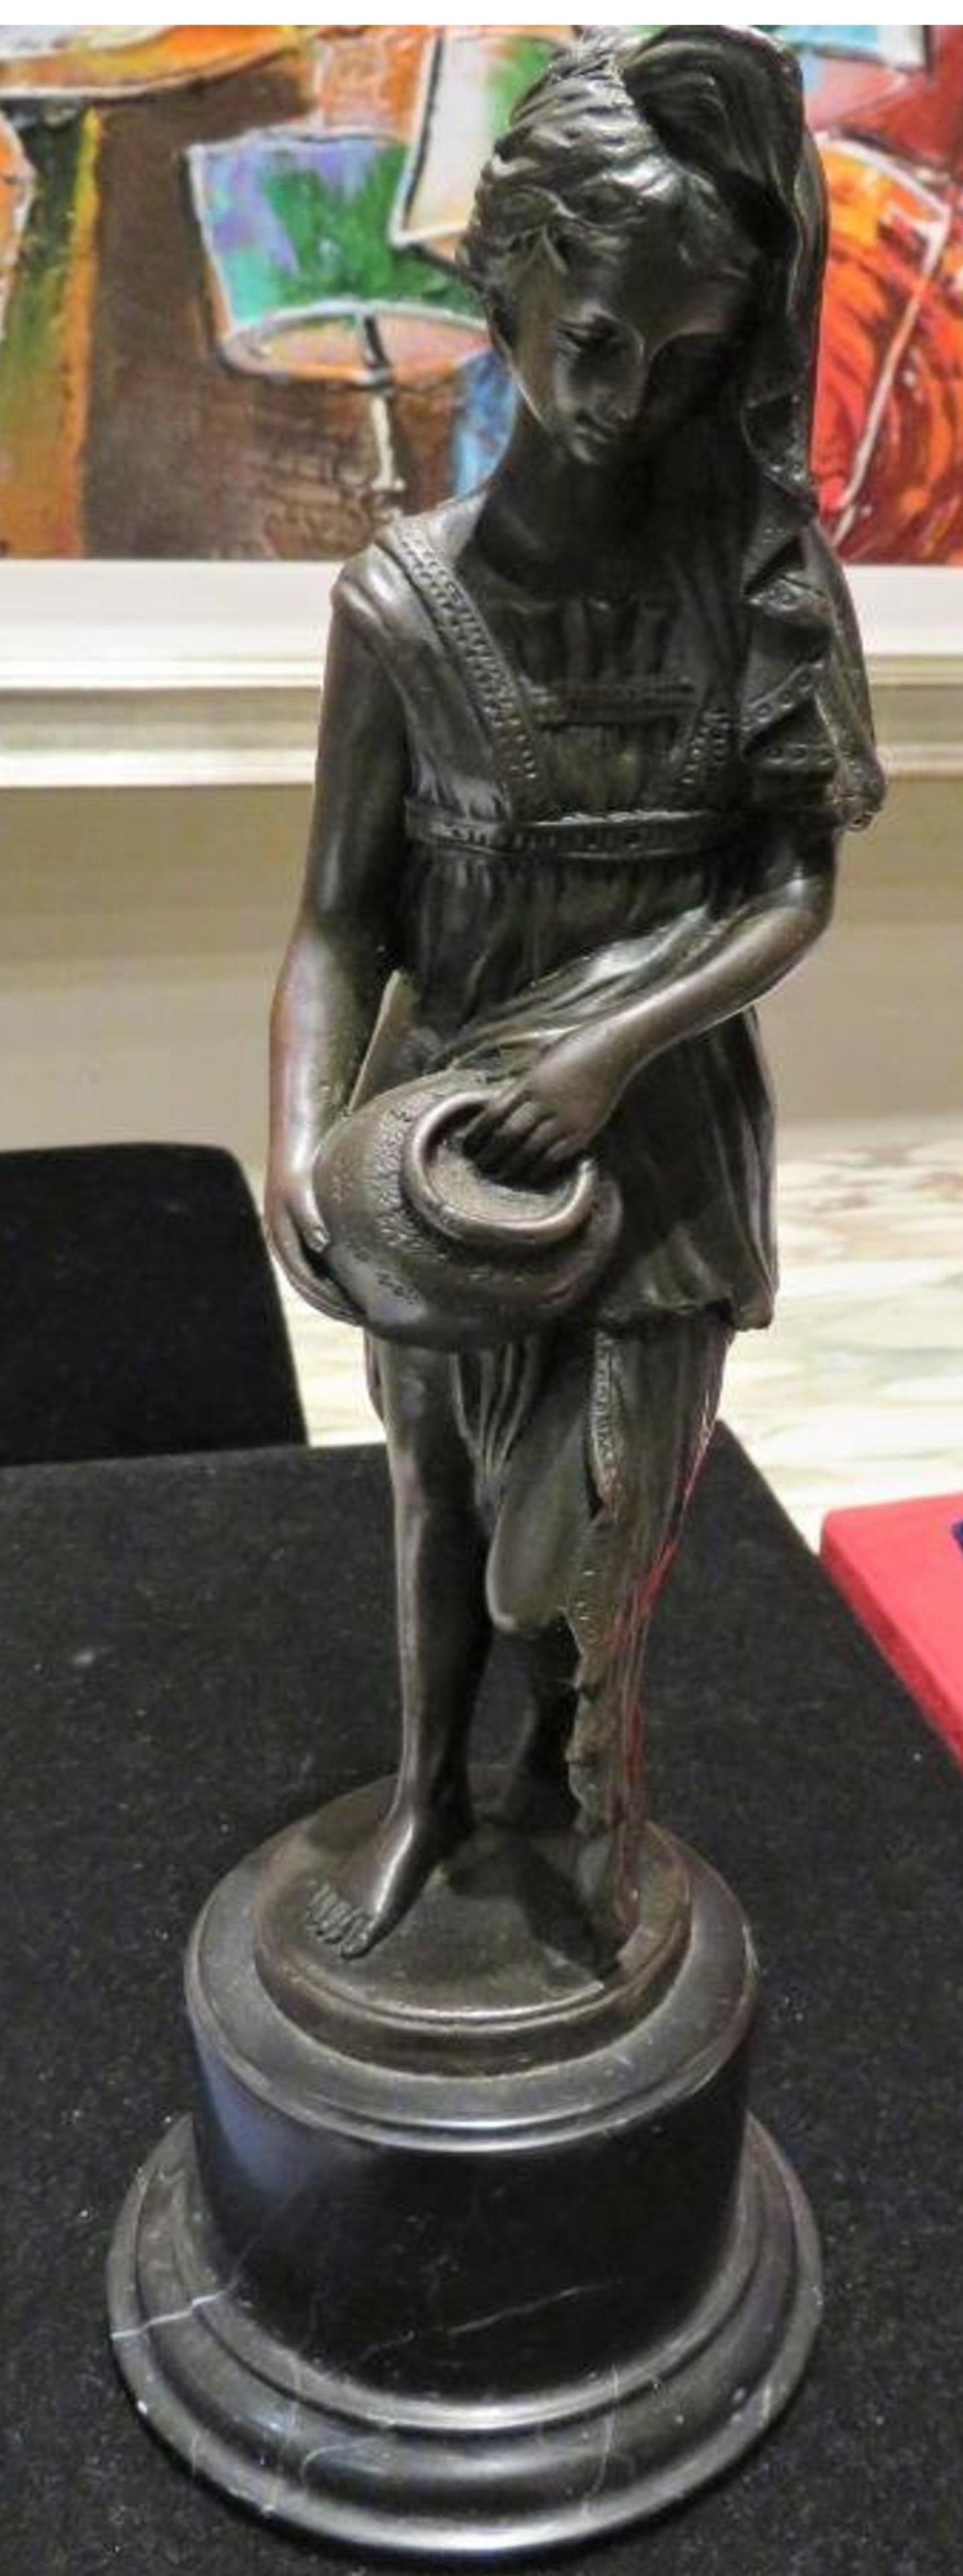 L'article suivant est une magnifique sculpture en bronze de qualité muséale représentant une femme magnifiquement drapée tenant une cruche. Le bronze est finement exécuté, avec des détails exceptionnels et une patine fine, et repose sur un socle en